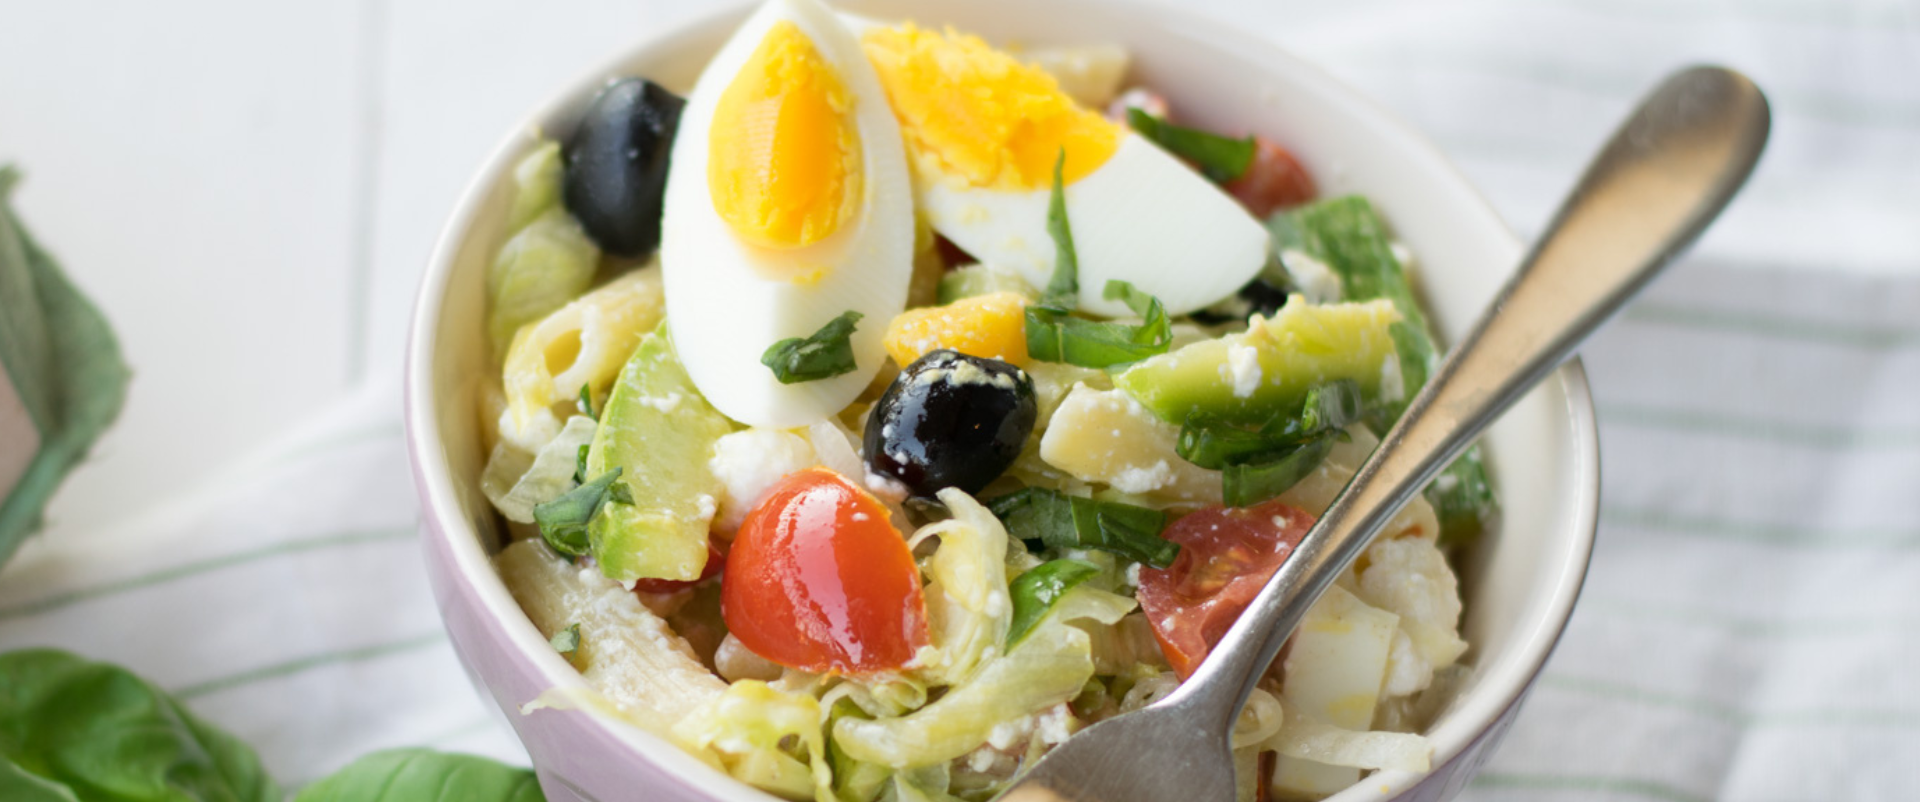 Insalata di pasta con uova sode e verdure di stagione